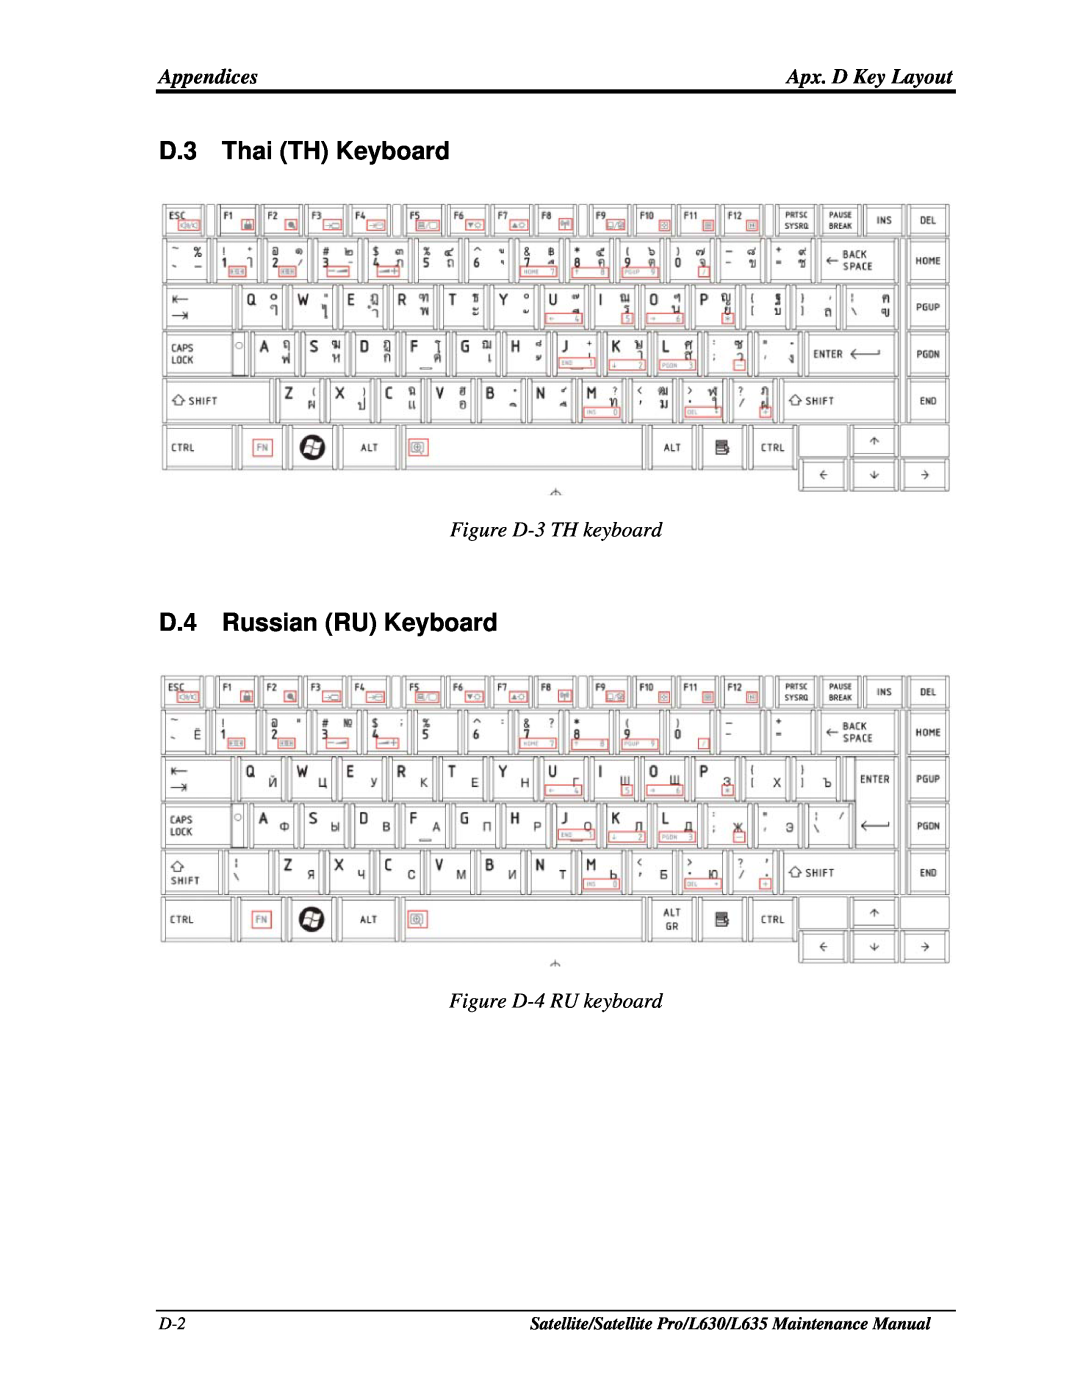 Toshiba L630, L635 manual D.3 Thai TH Keyboard, D.4 Russian RU Keyboard, Figure D-3 TH keyboard, Figure D-4 RU keyboard 